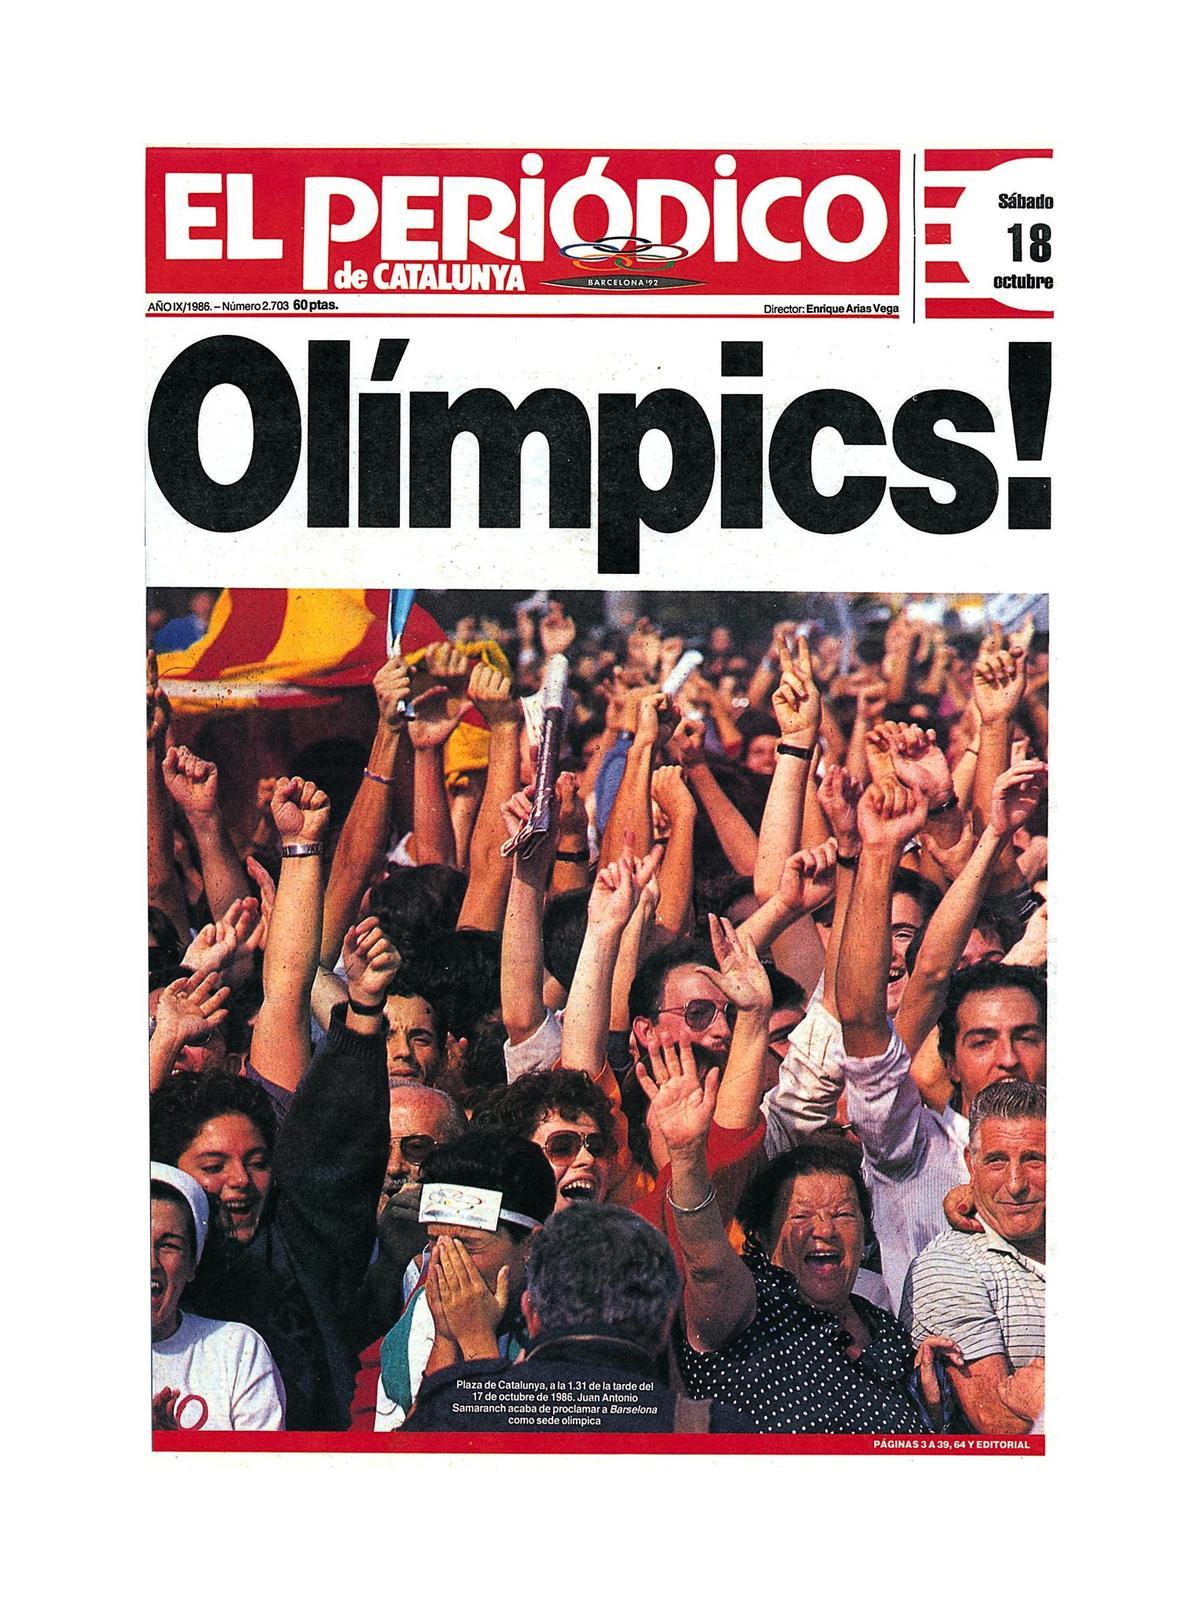 Portada de EL PERIÓDICO del 18 de octubre de 1986, el día después de que Barcelona fuera designada sede de los Juegos Olímpicos de 1992.